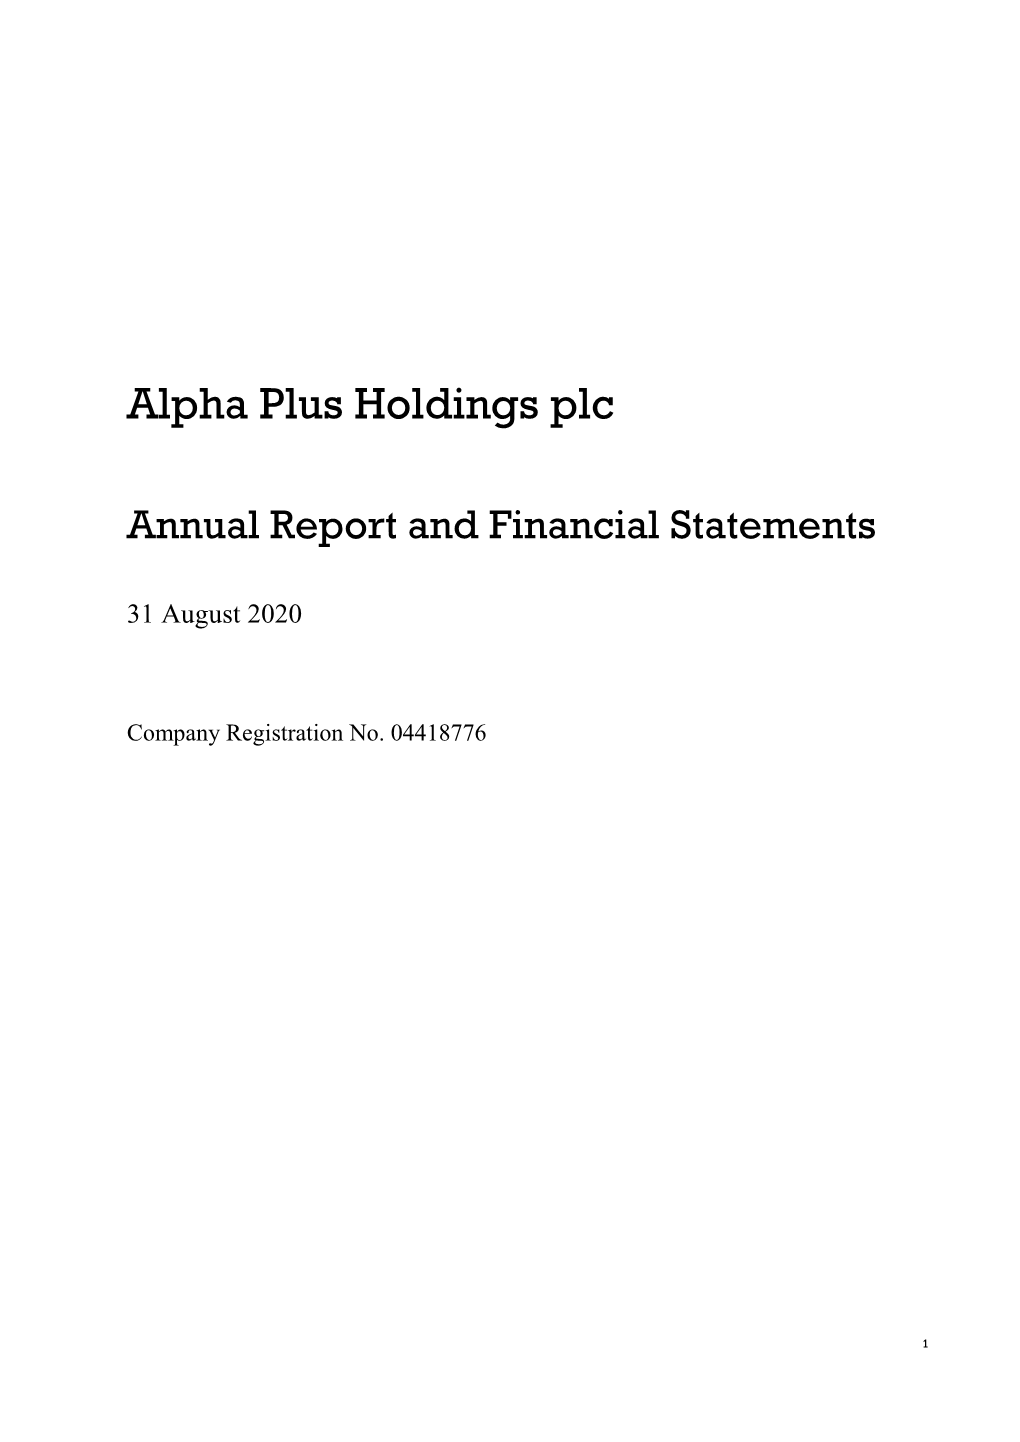 Alpha Plus Holdings Plc